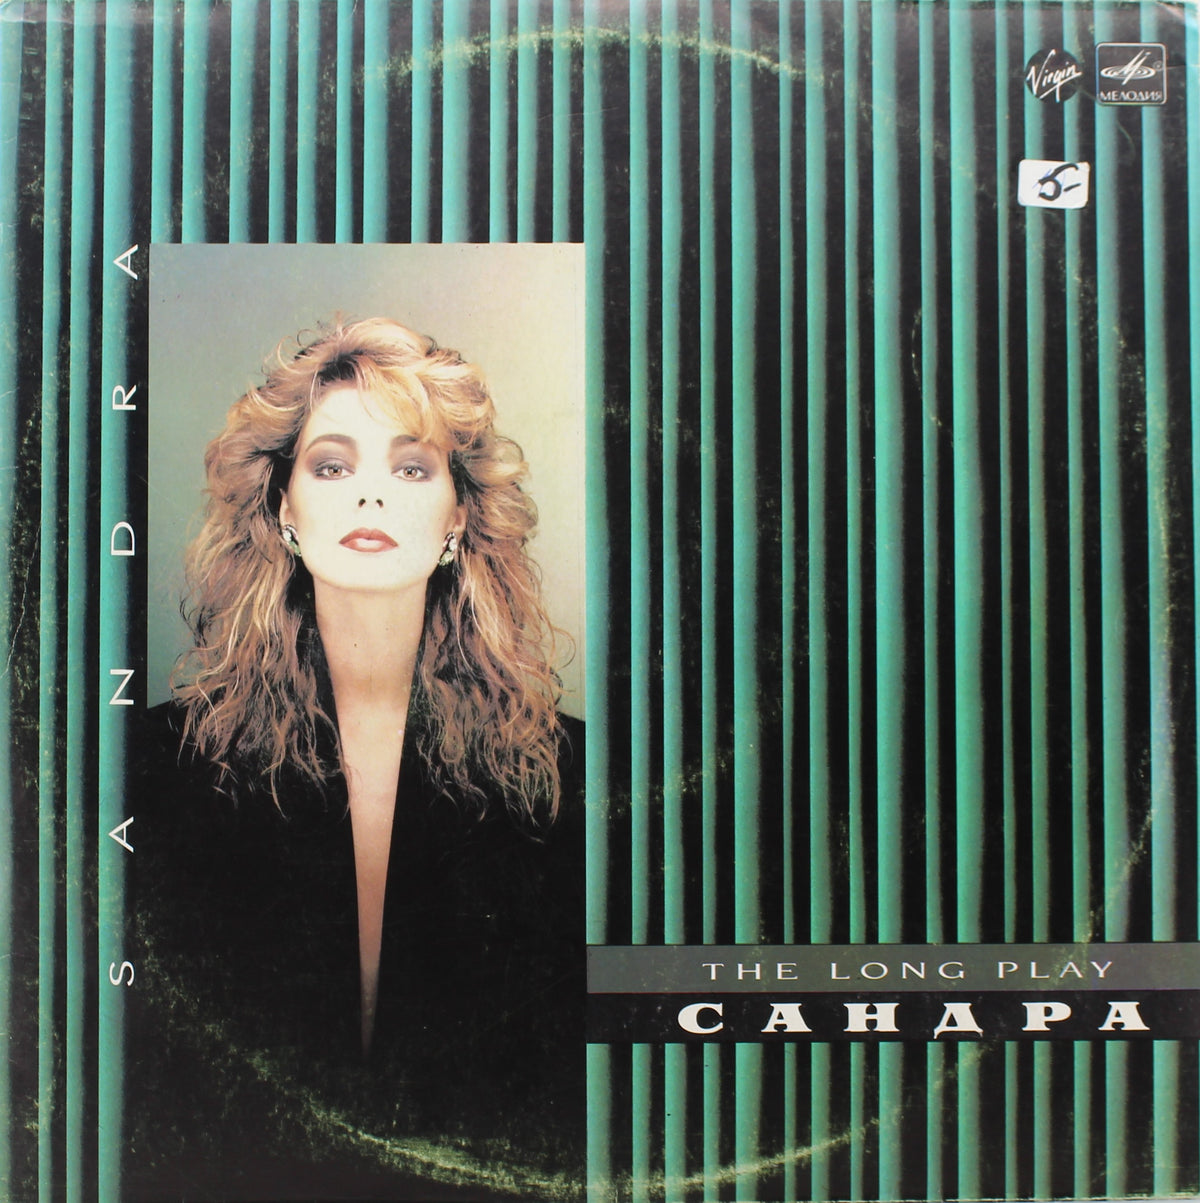 Sandra, Vinyl, LP, Album, Stereo, White Labels, G+/VG, USSR 1988